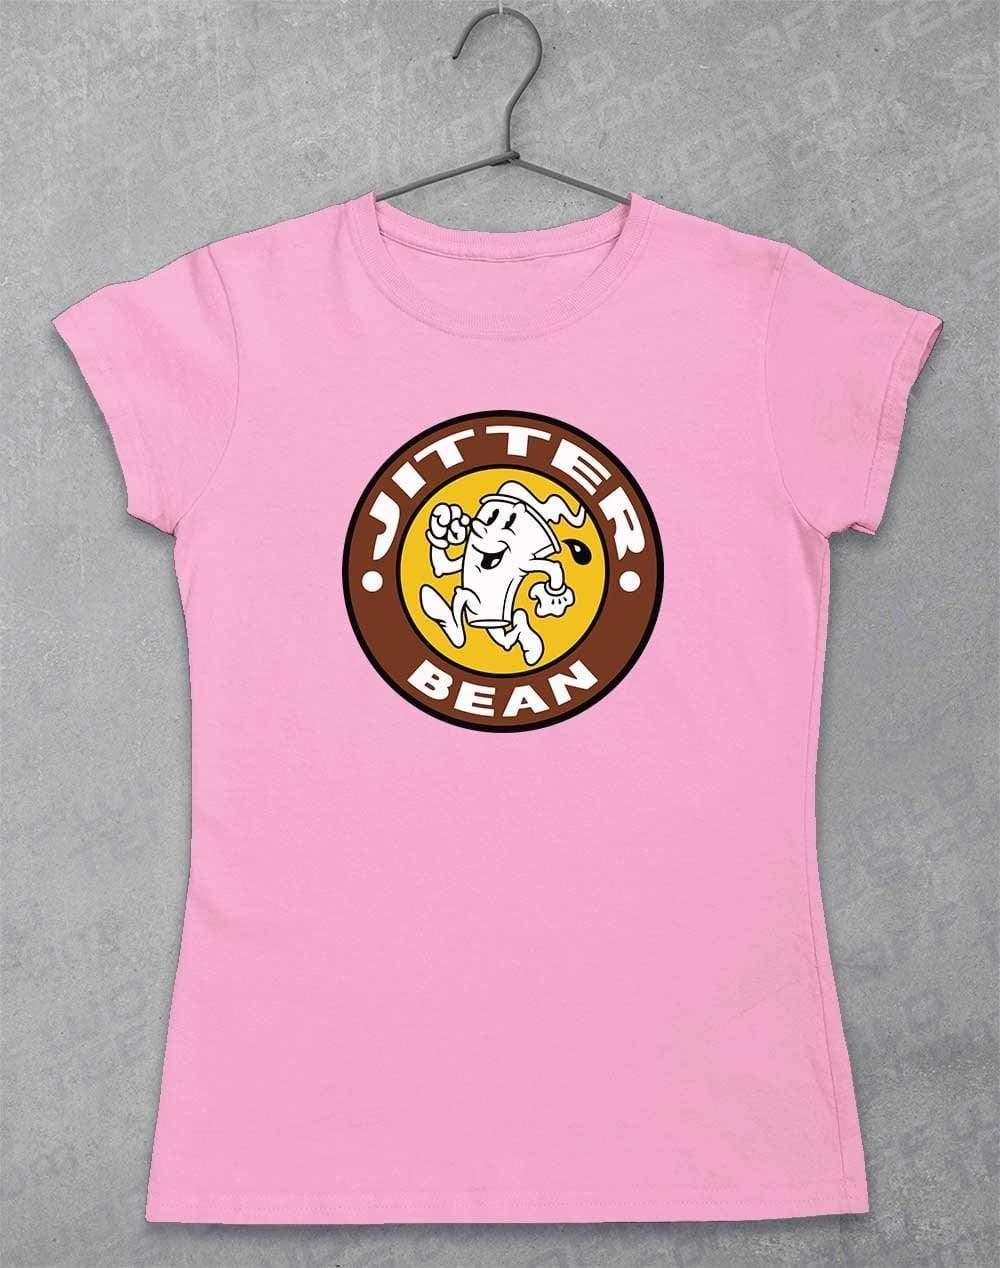 Jitter Bean Women's T-Shirt 8-10 / Light Pink  - Off World Tees